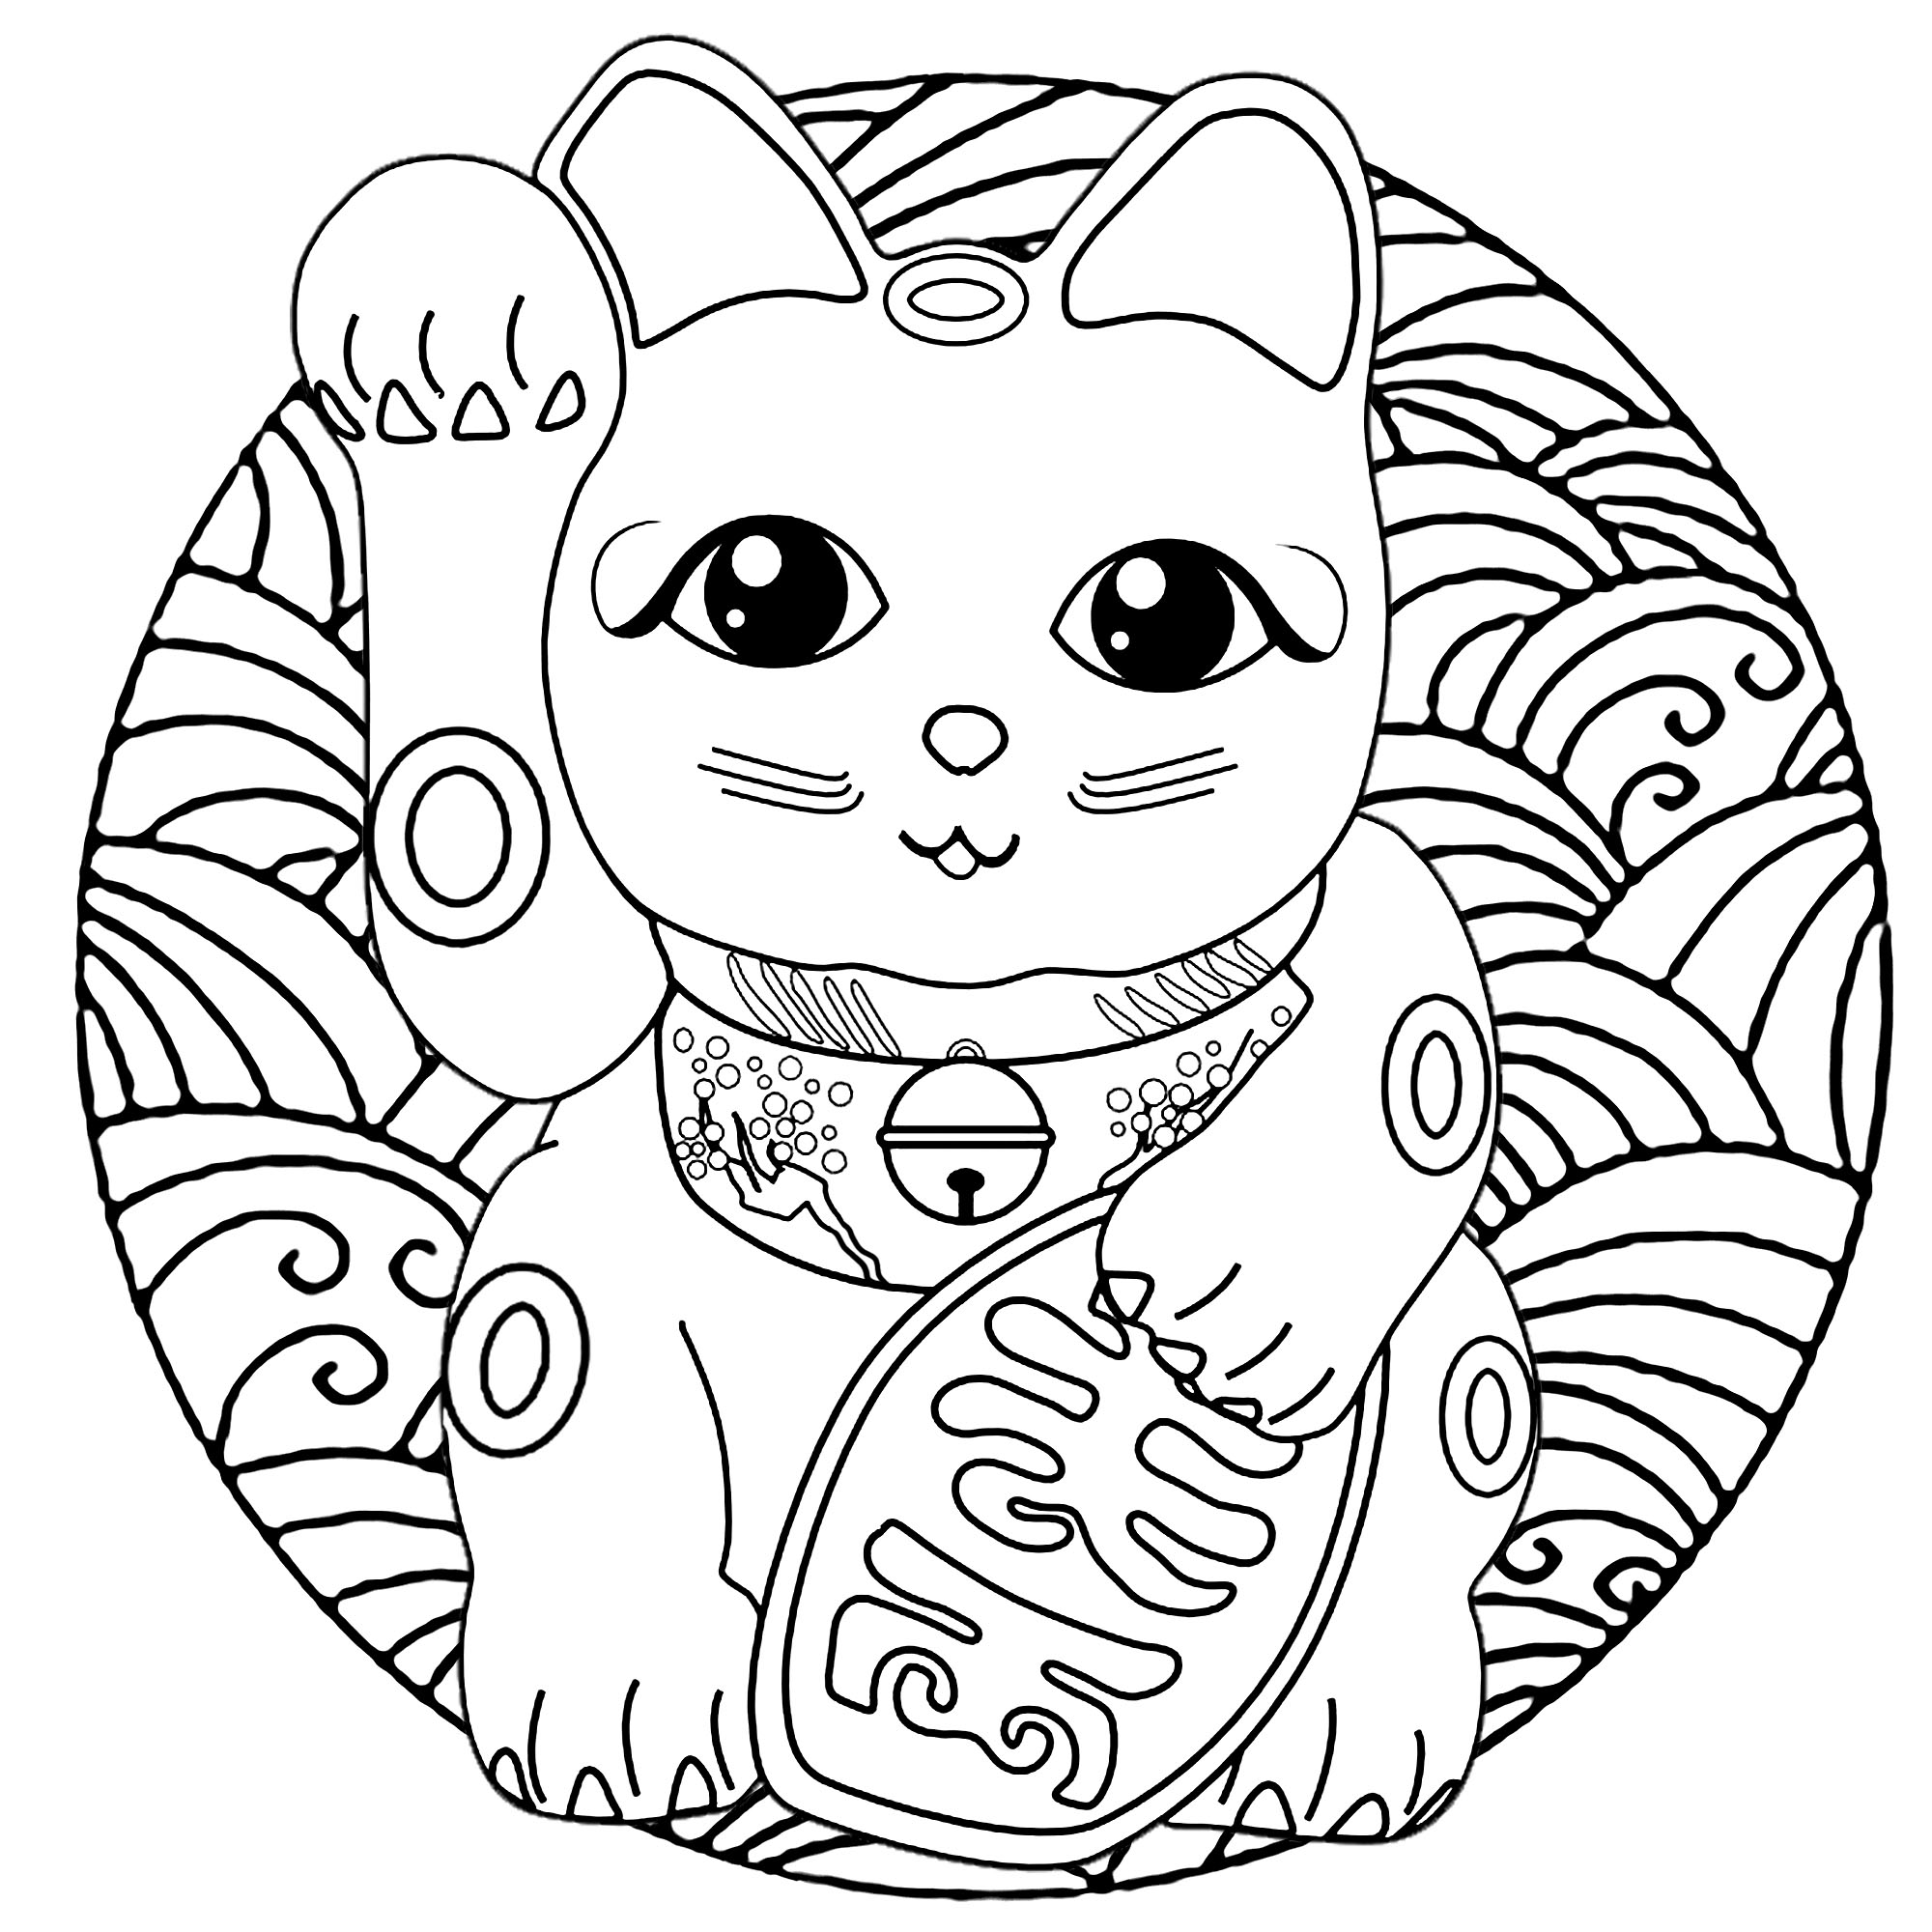 Un simpatico gatto Maneki Neko (statuetta giapponese: portafortuna, talismano) in un mandala pieno di onde (stile grafico giapponese)